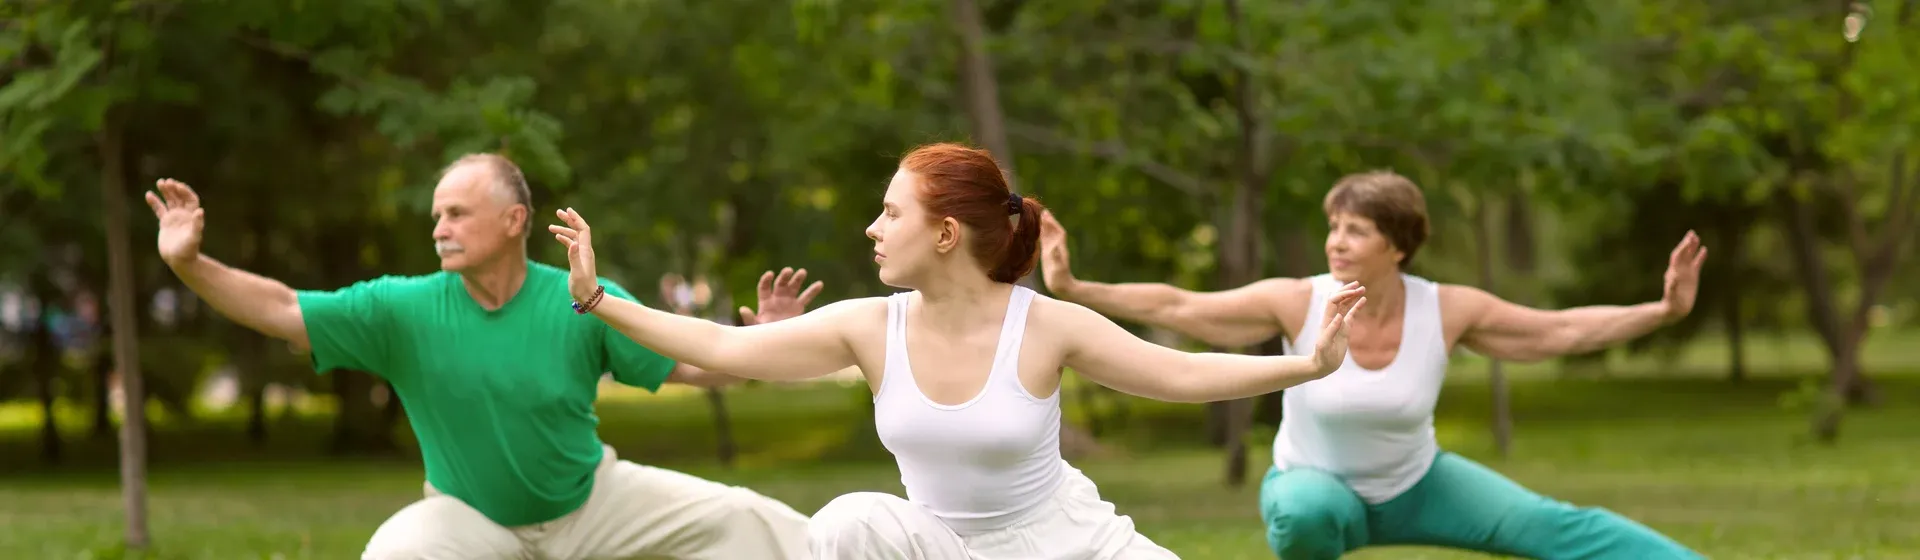 Três pessoas fazem movimento com os braços do Tai Chi Chuan em um parque